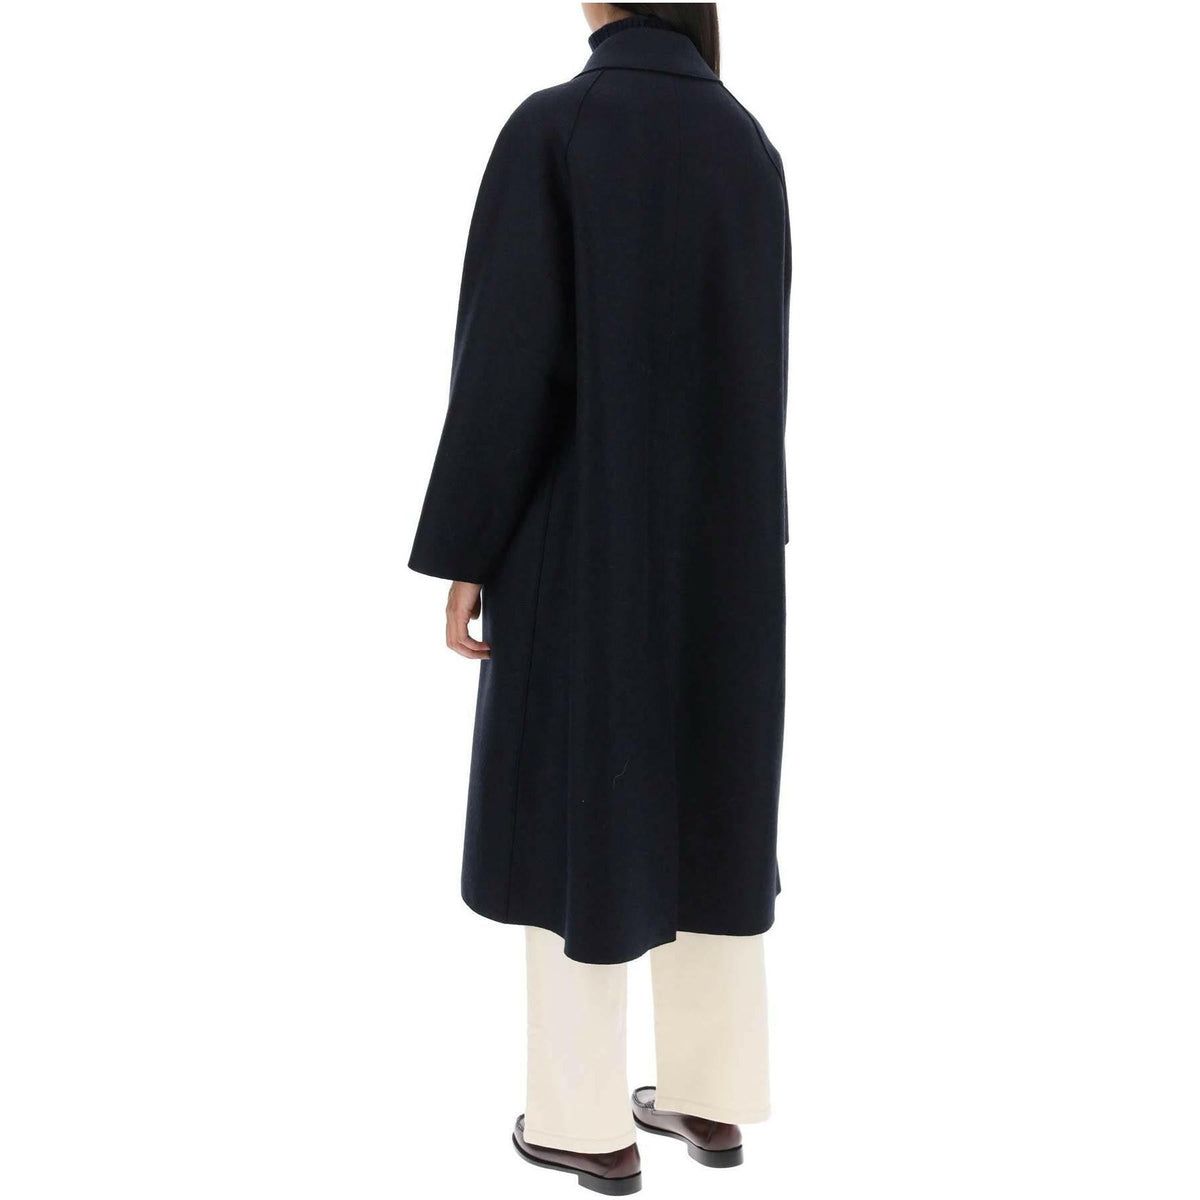 Balmacaan Coat In Pressed Wool HARRIS WHARF LONDON JOHN JULIA.